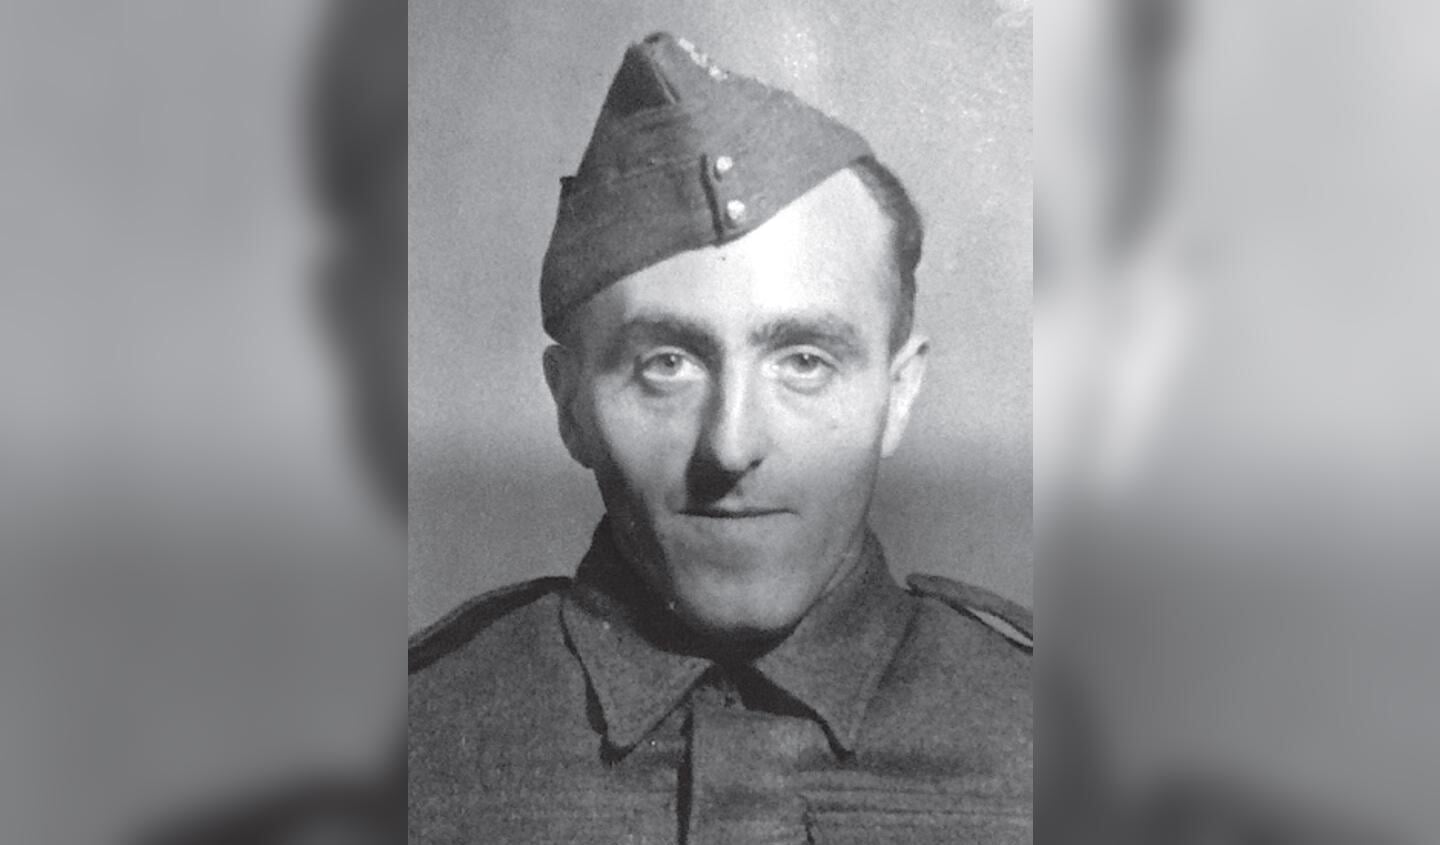 Foto: dourlein 1942

Pieter Dourlein in 1942 in het uniform van een Brits infanterist (bron: familiearchief erven
Dourlein)